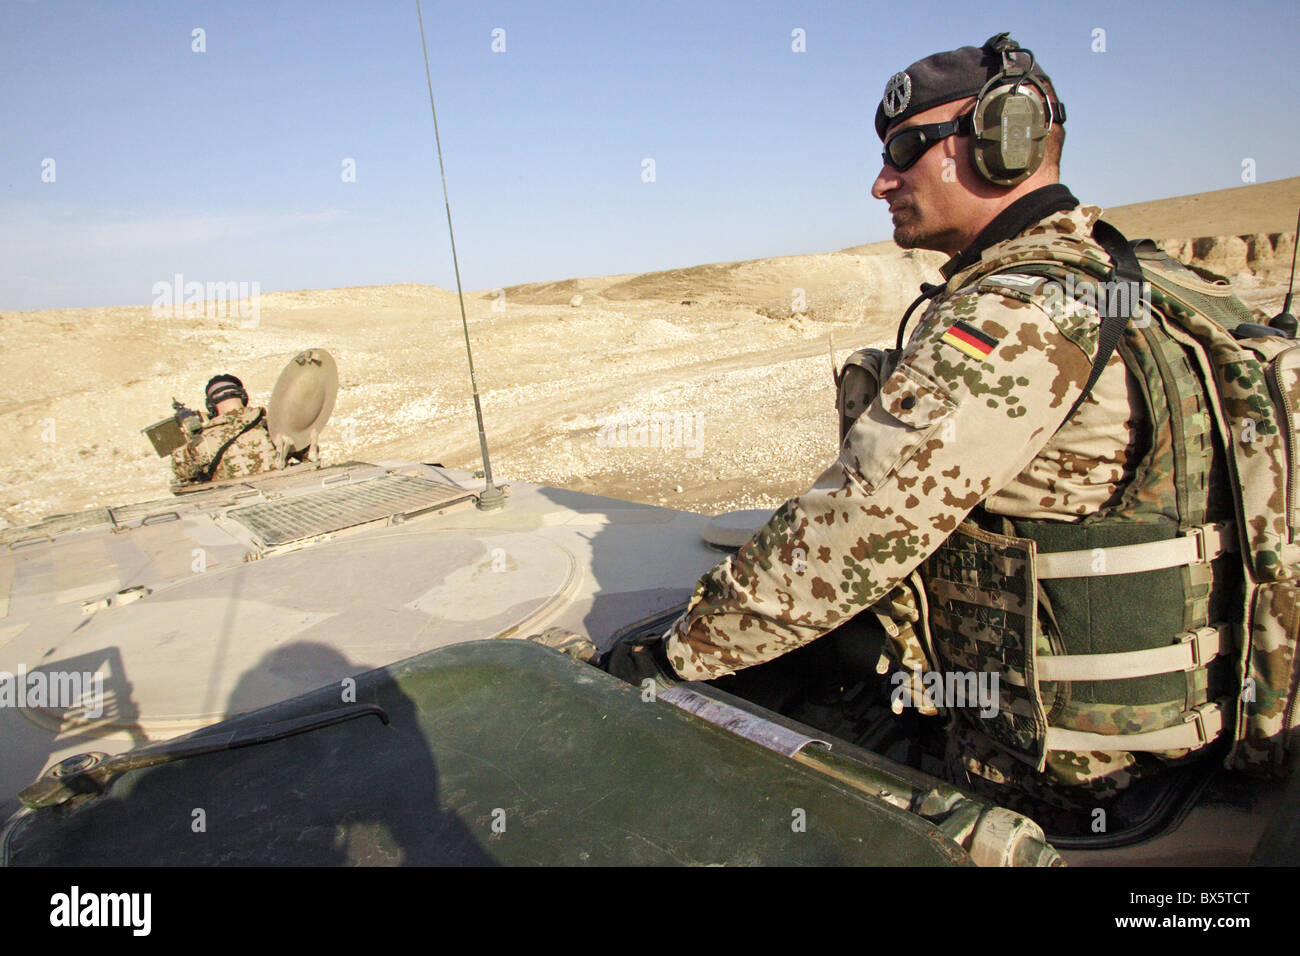 Des soldats de l'ISAF sur une patrouille, Mazar-e Sharif, Afghanistan Banque D'Images